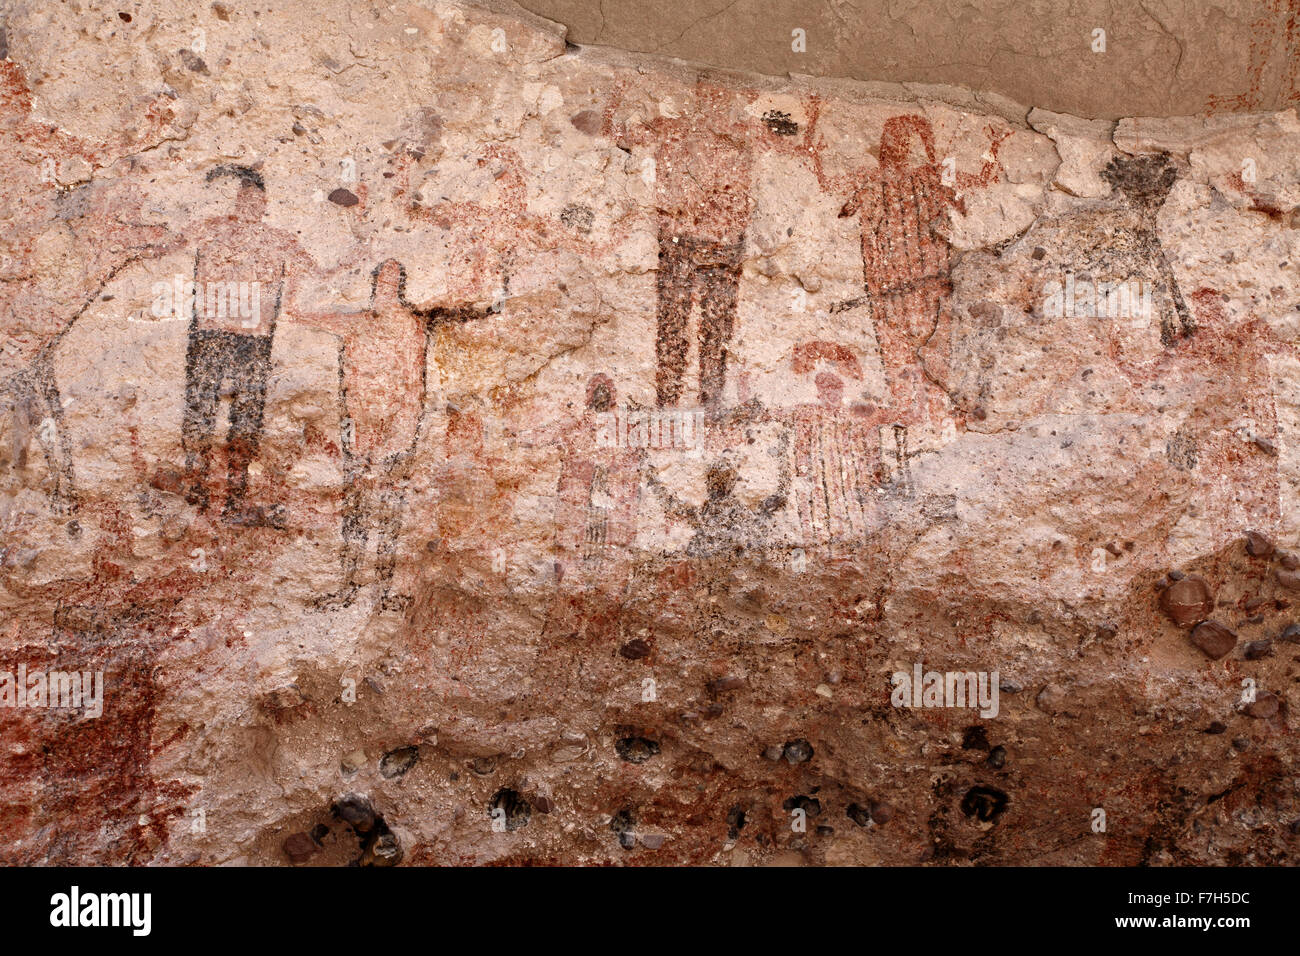 Pr7174-D. Pétroglyphes et peintures rupestres de Santa Marta, qui montrent des personnes, d'animaux (chevreuils, lapins, poissons, etc.). Baja, au Mexique. Banque D'Images